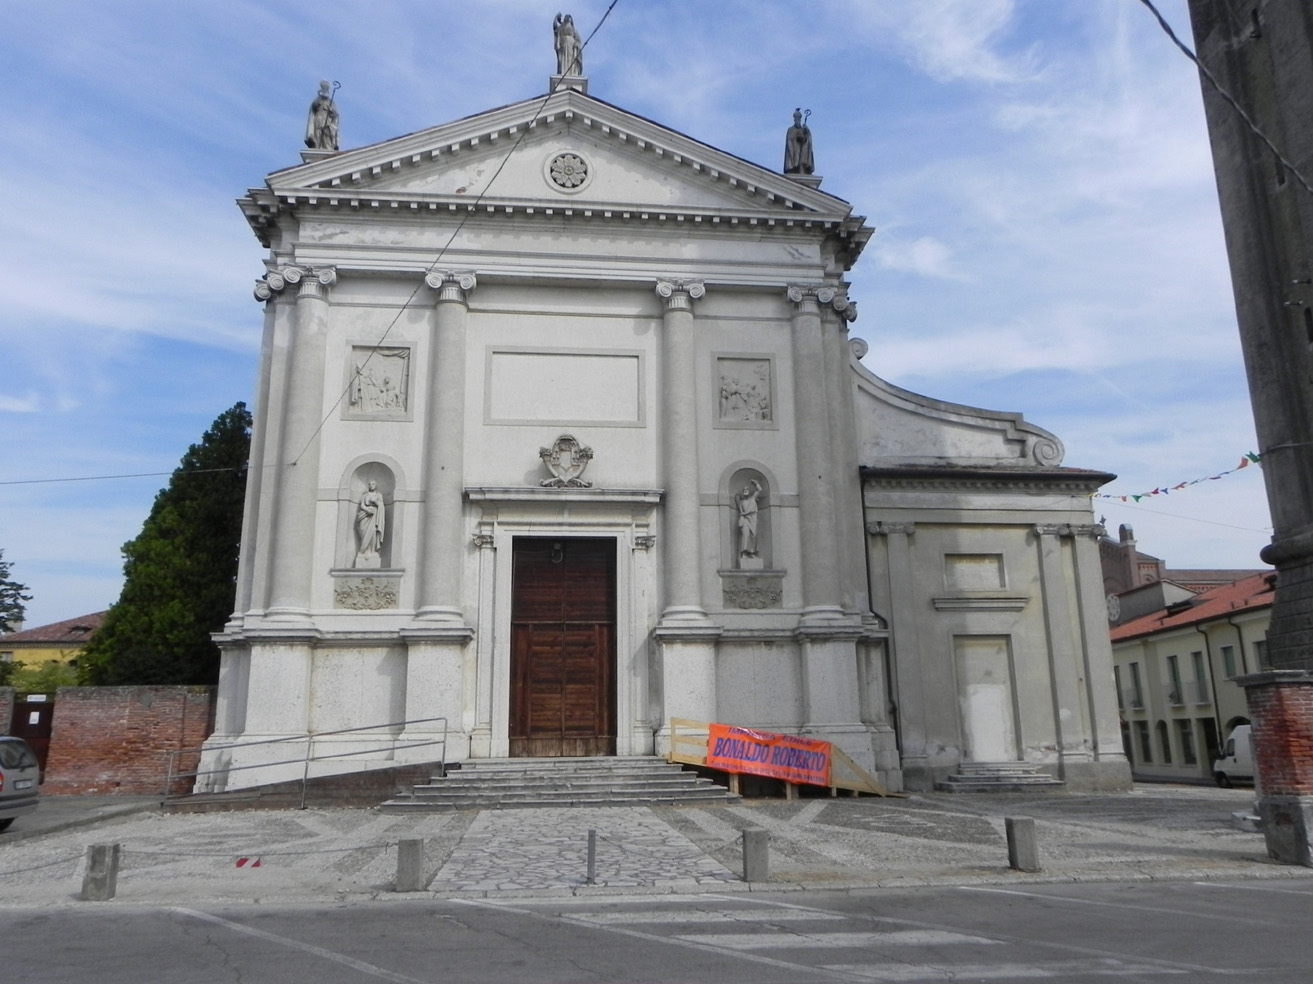 Chiesa di San Martino Vescovo e campanile (chiesa) - San Martino di Lupari (PD)  (XVI, fine)